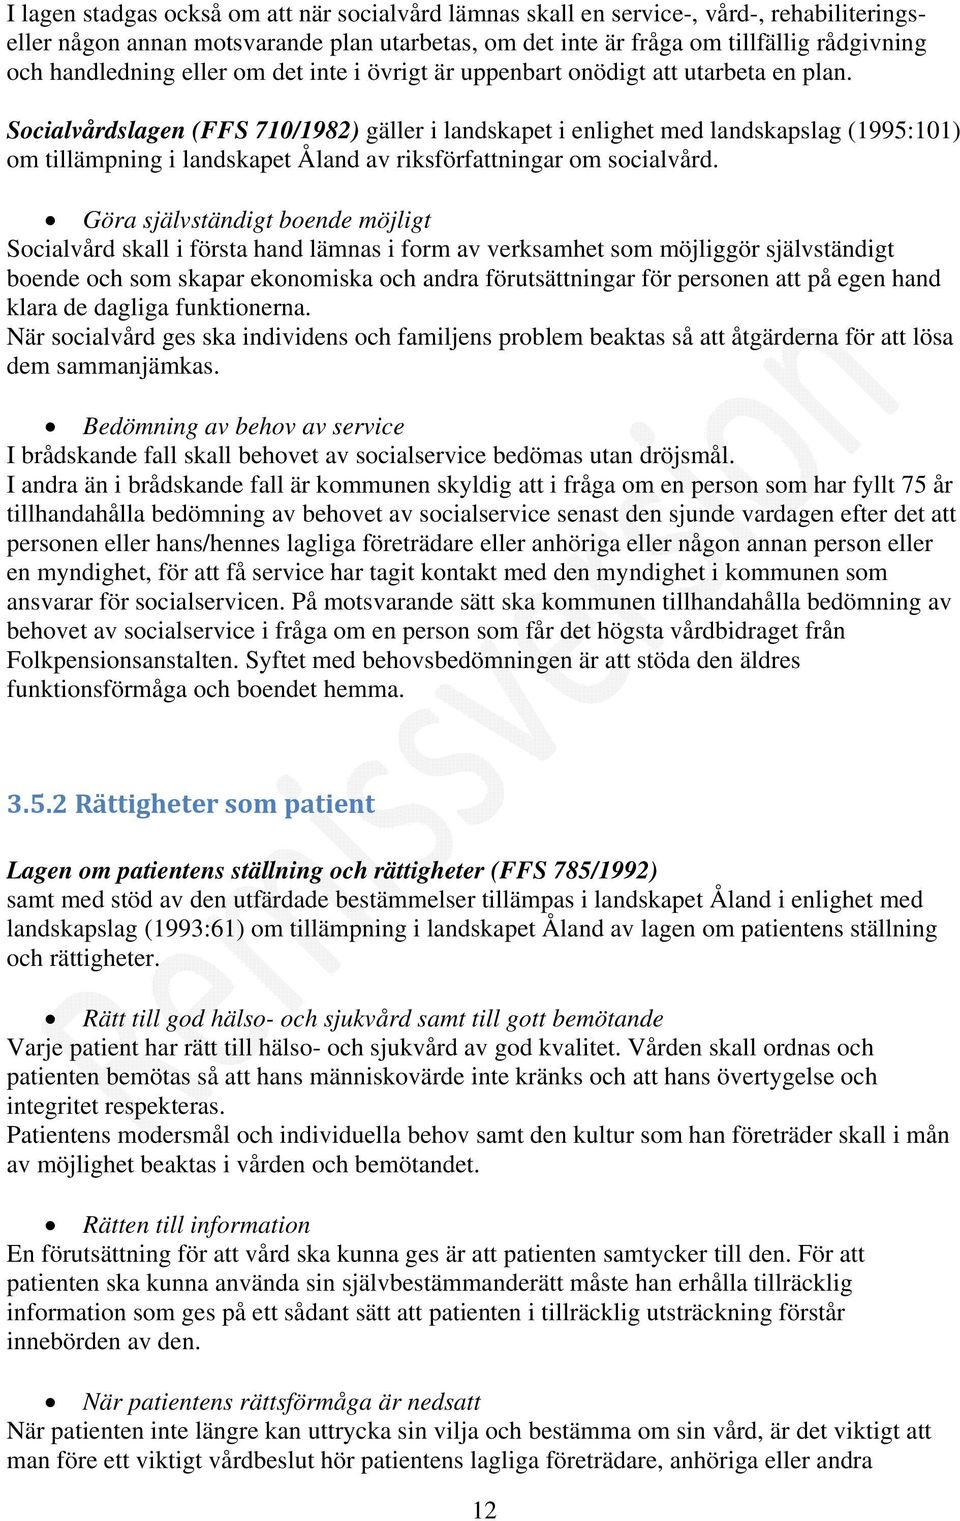 Socialvårdslagen (FFS 710/1982) gäller i landskapet i enlighet med landskapslag (1995:101) om tillämpning i landskapet Åland av riksförfattningar om socialvård.